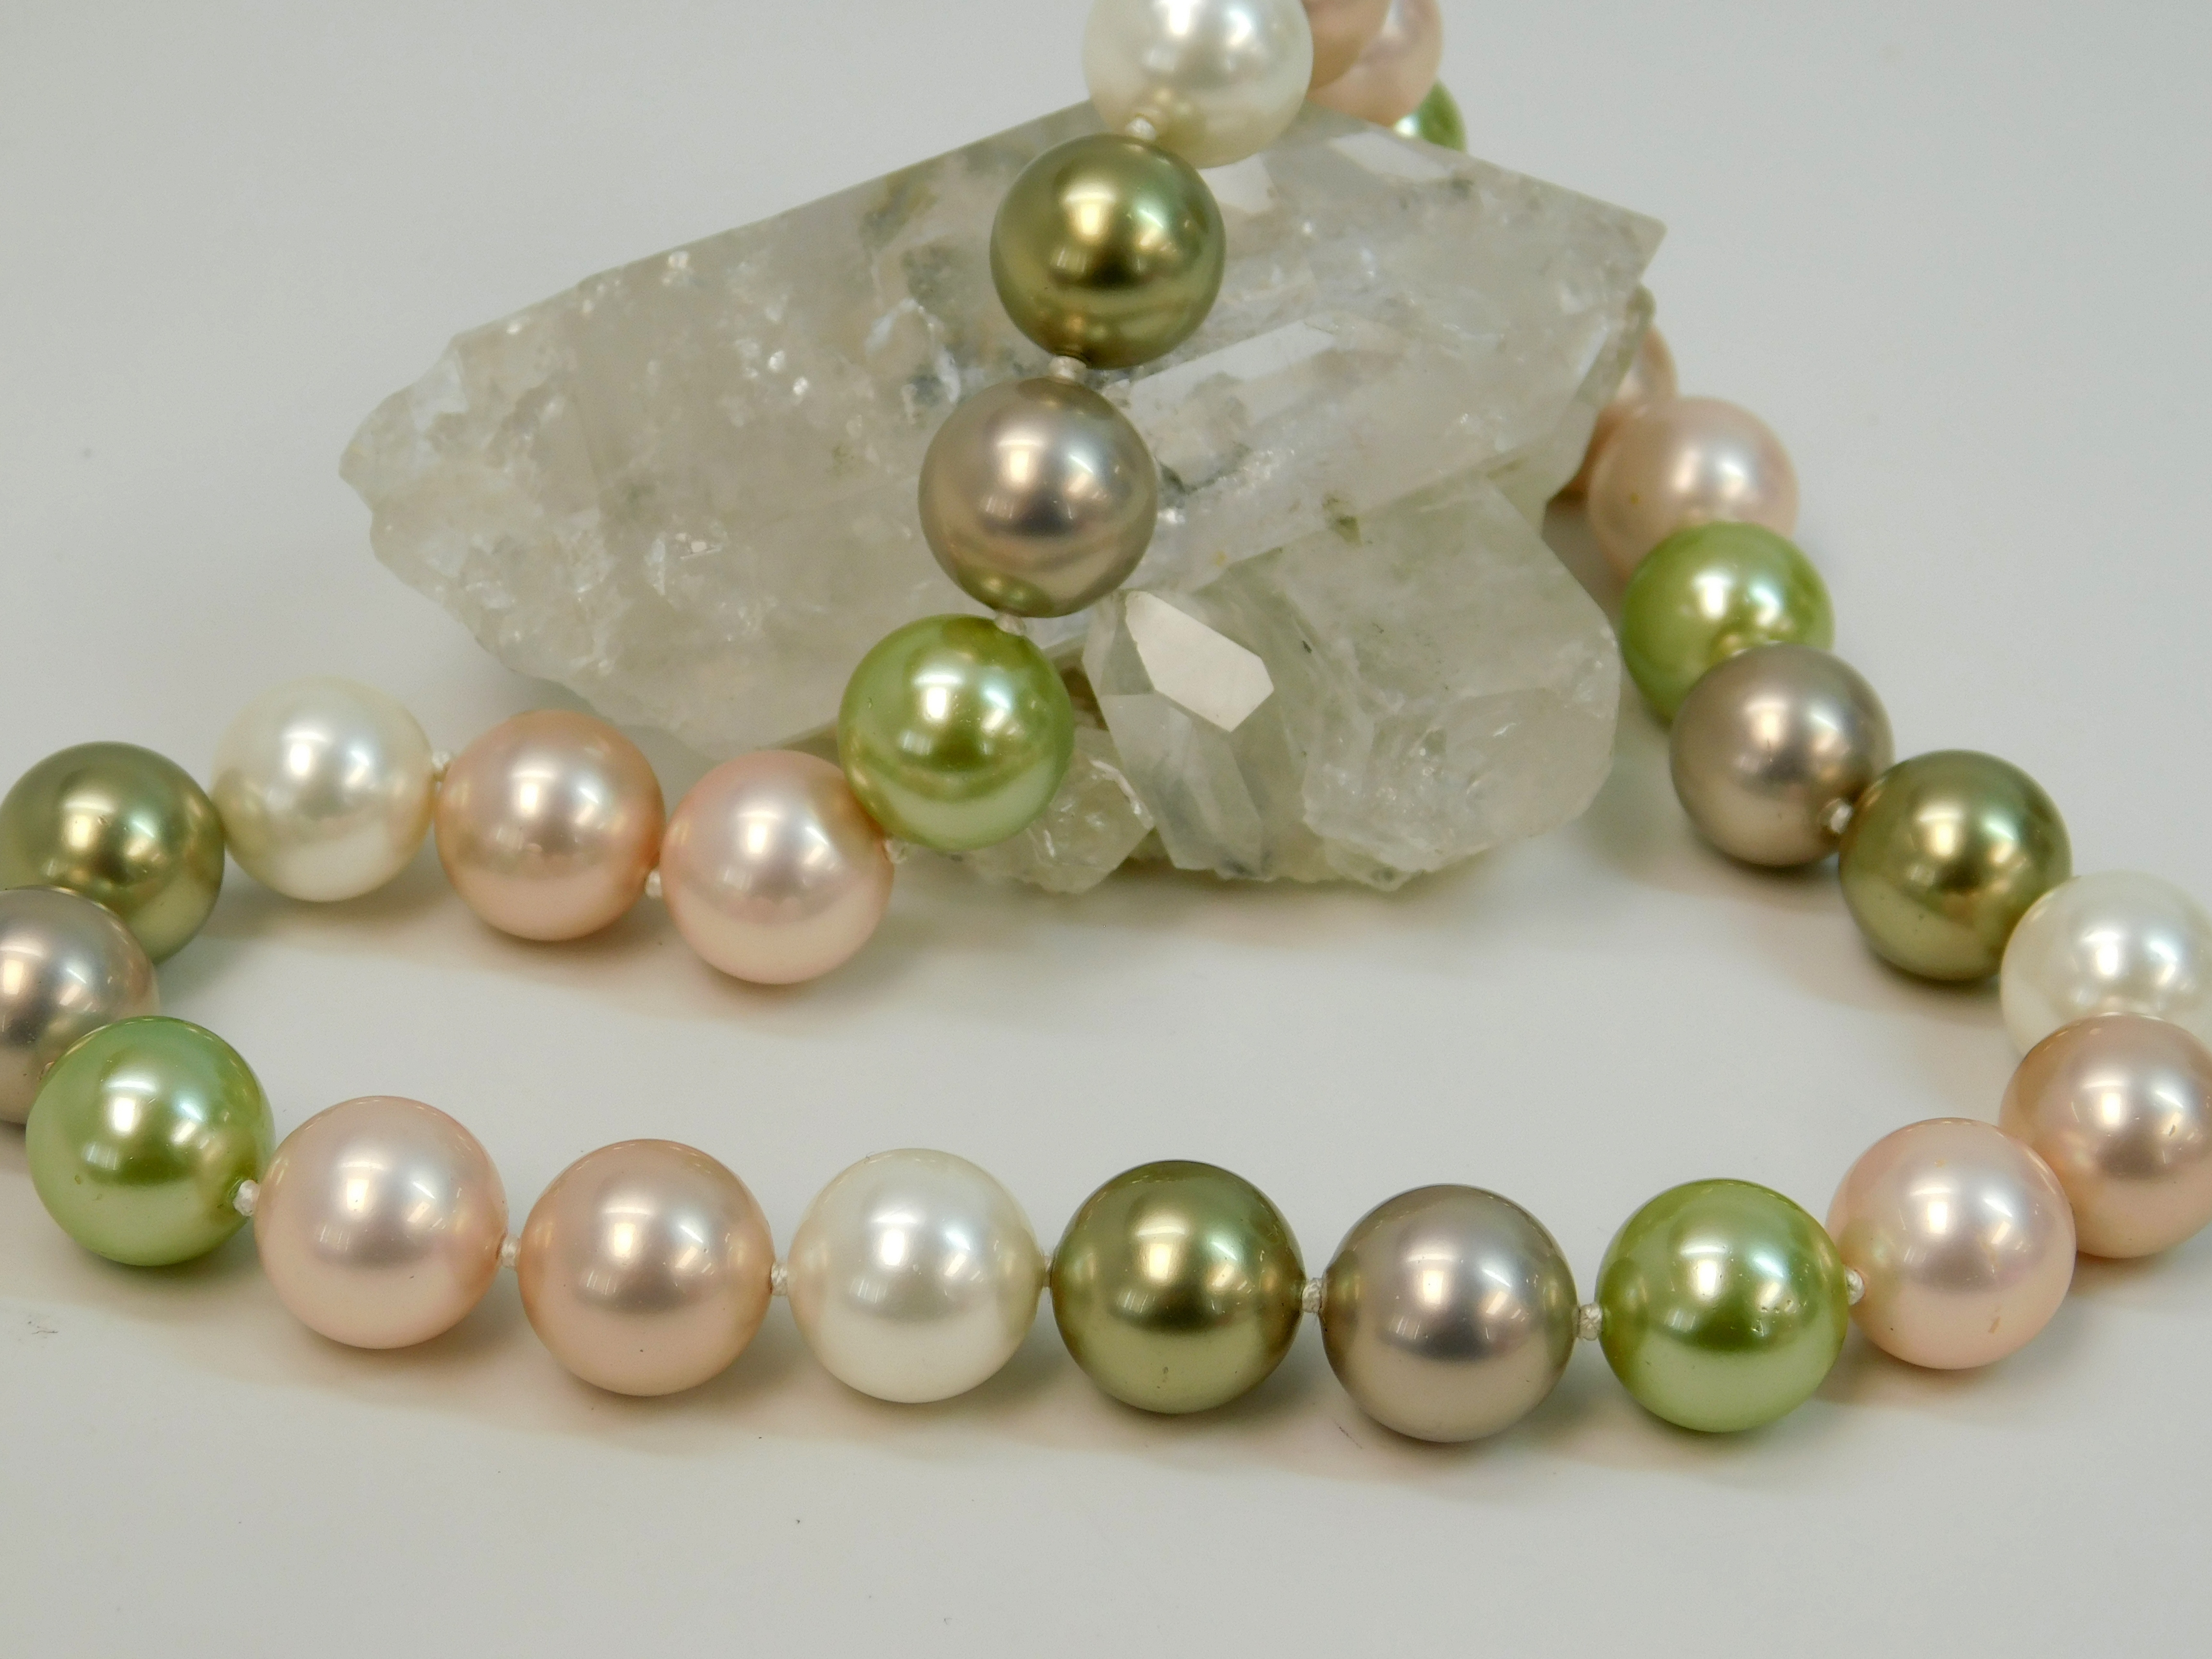 gold cuban link bracelet wholesale in bulk online - Nihaojewelry Mexico